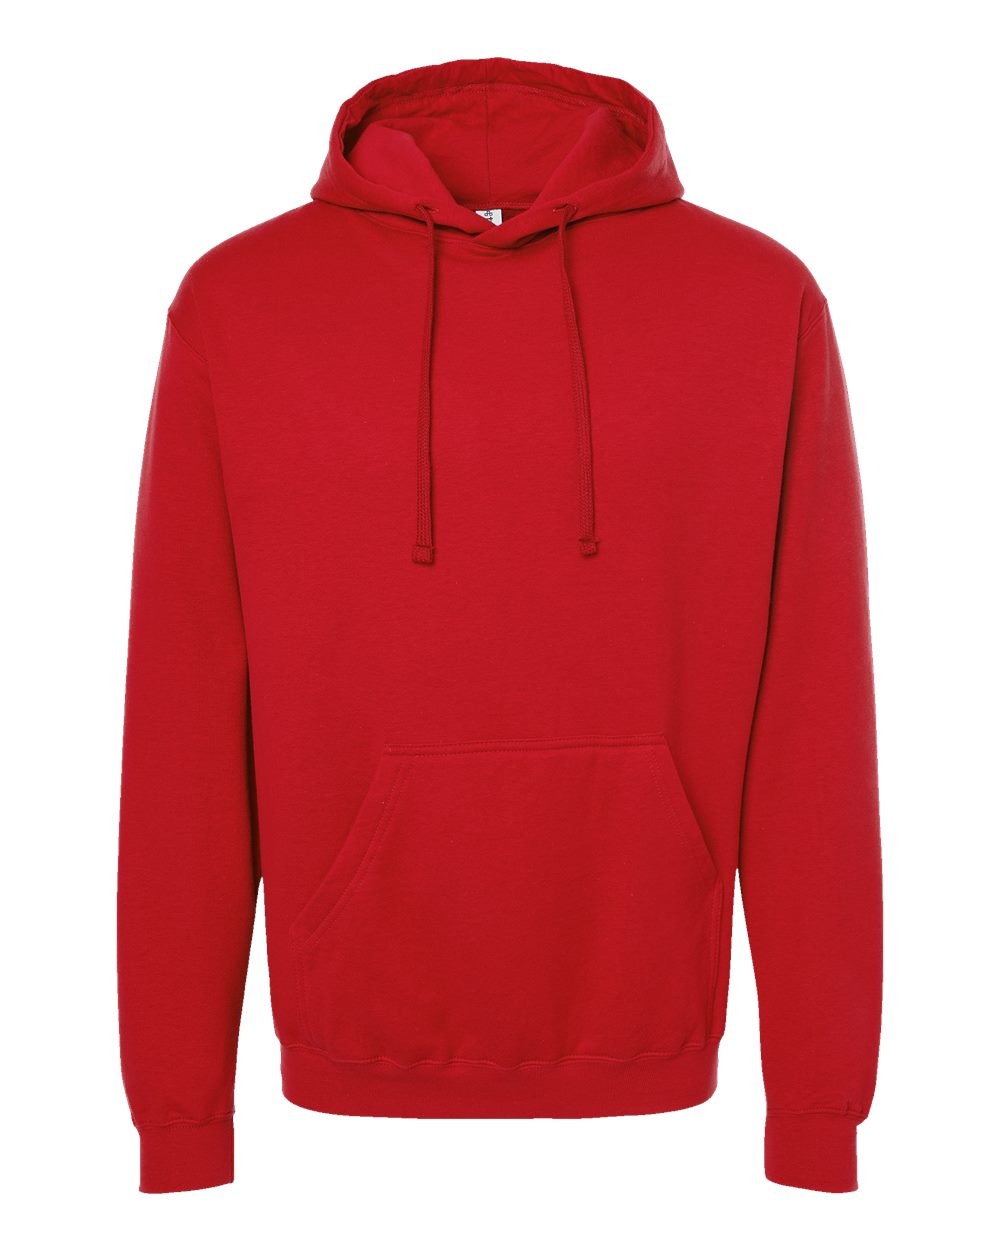 Tultex - Unisex Fleece Hooded Sweatshirt - 320